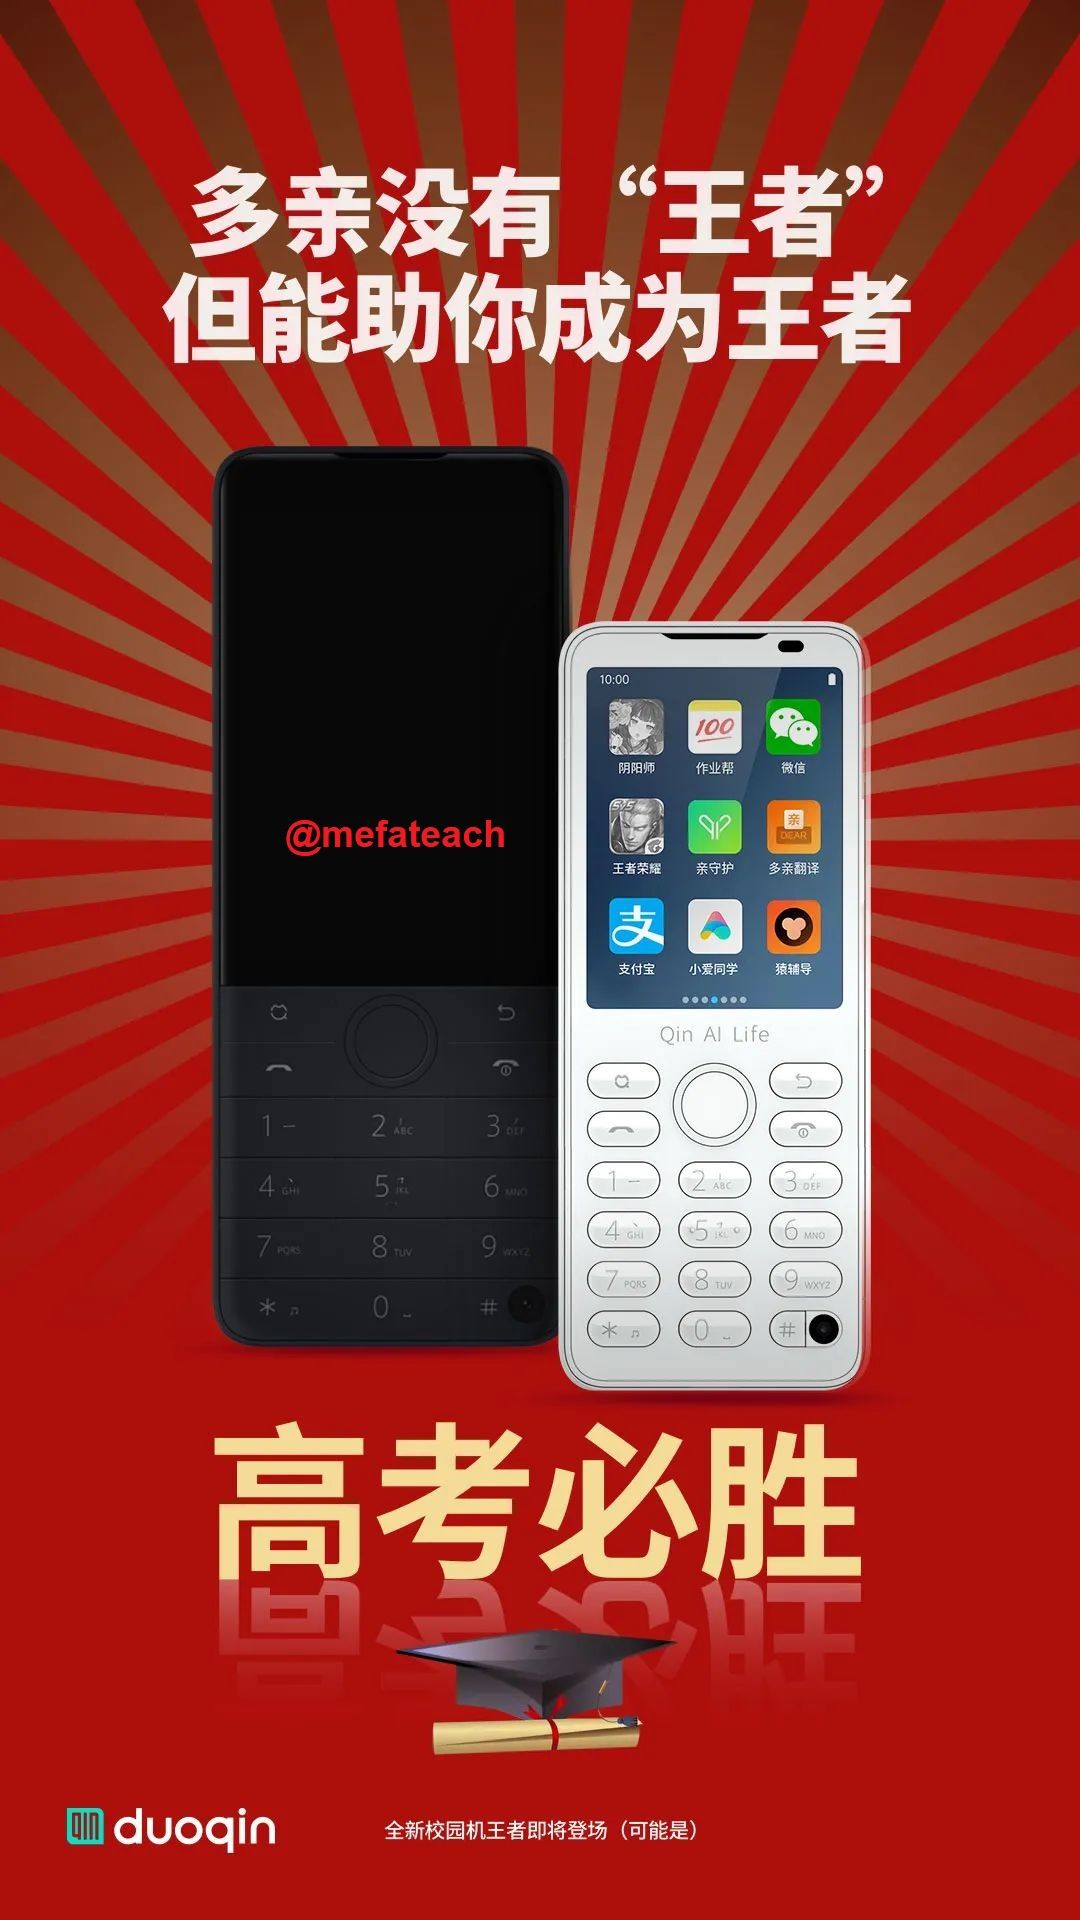 WeChat Image_20220608150604.jpg